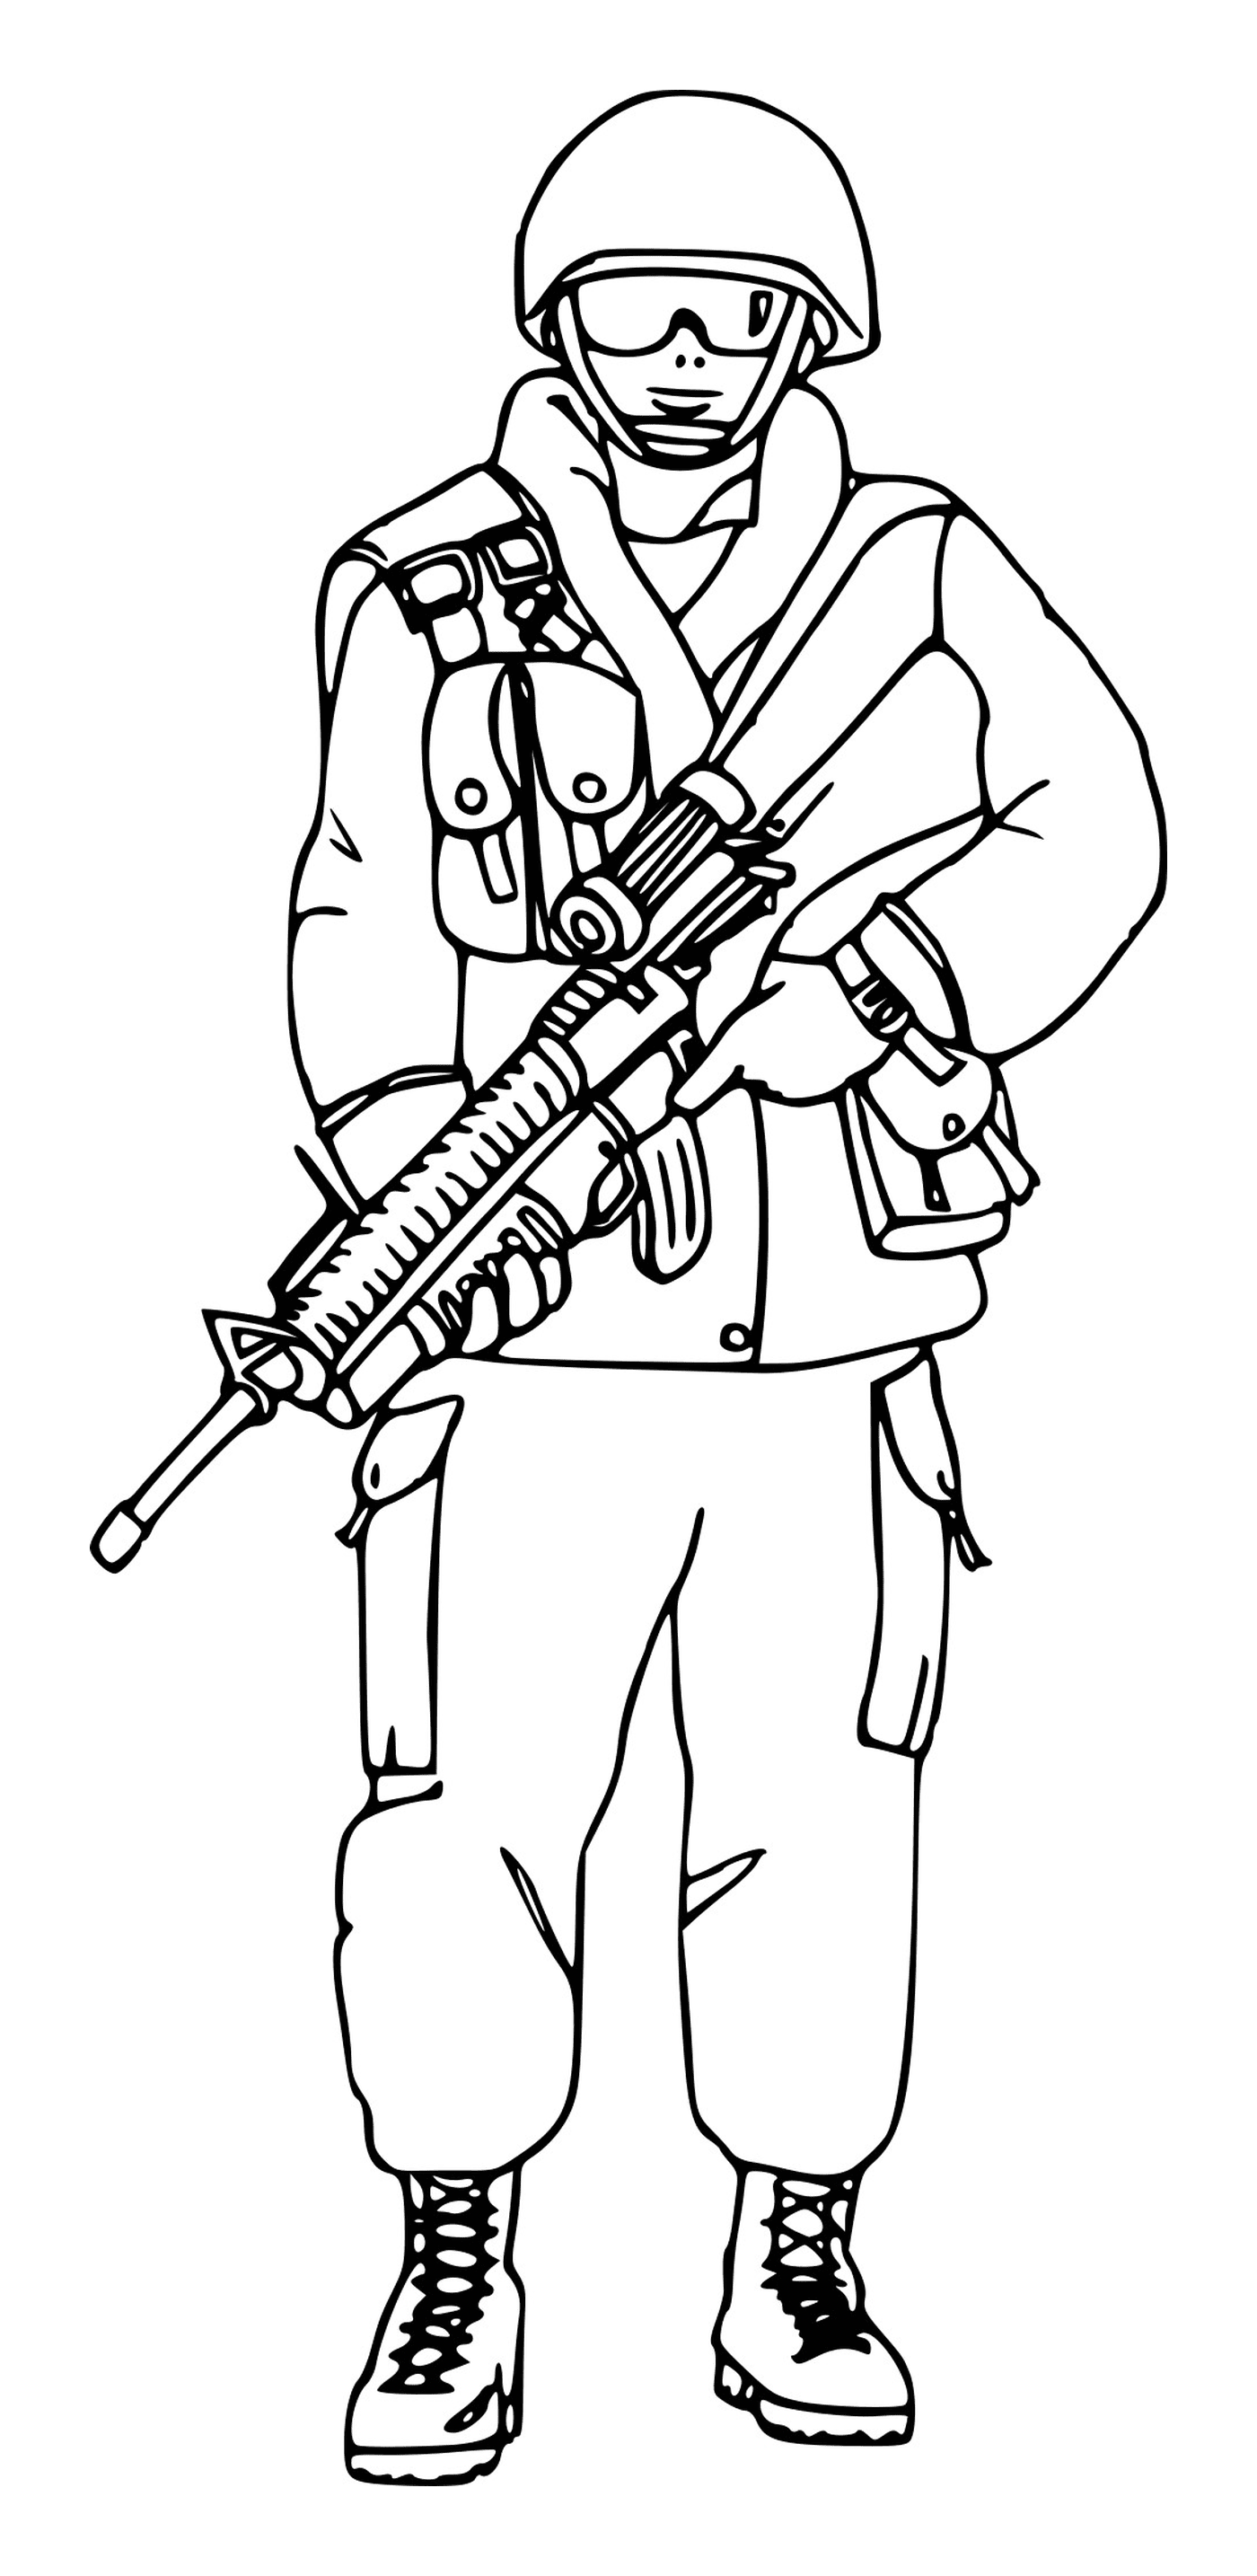  Soldato con occhiali: un soldato con un fucile 